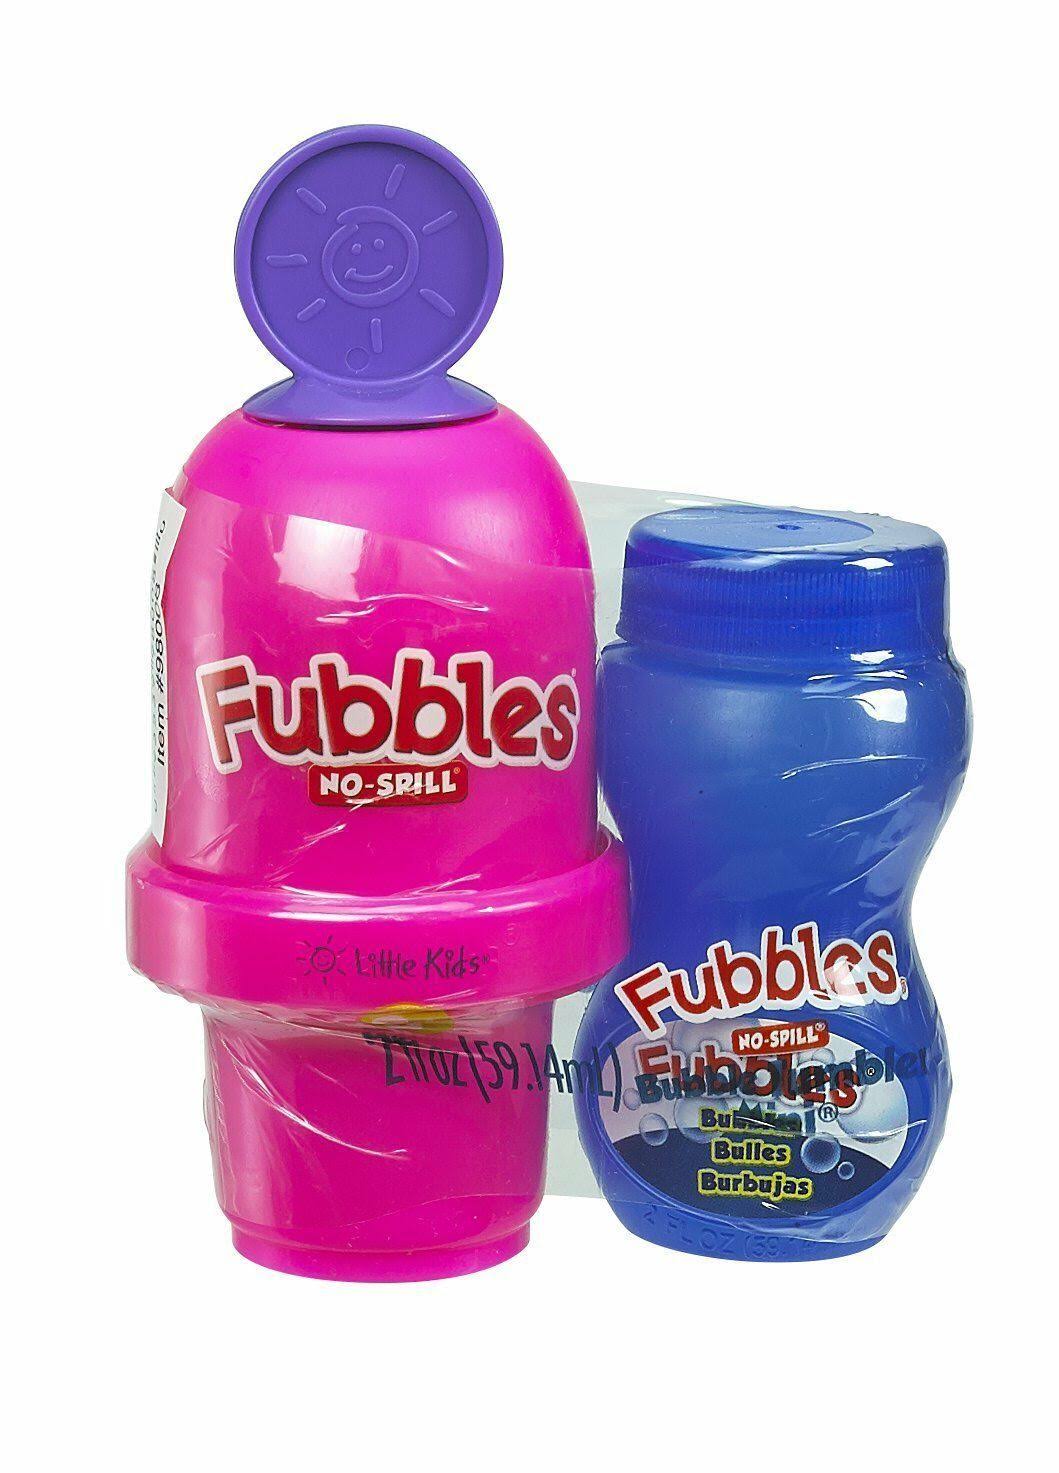 Little Kids Fubbles No-Spill Bubble Tumbler Minis